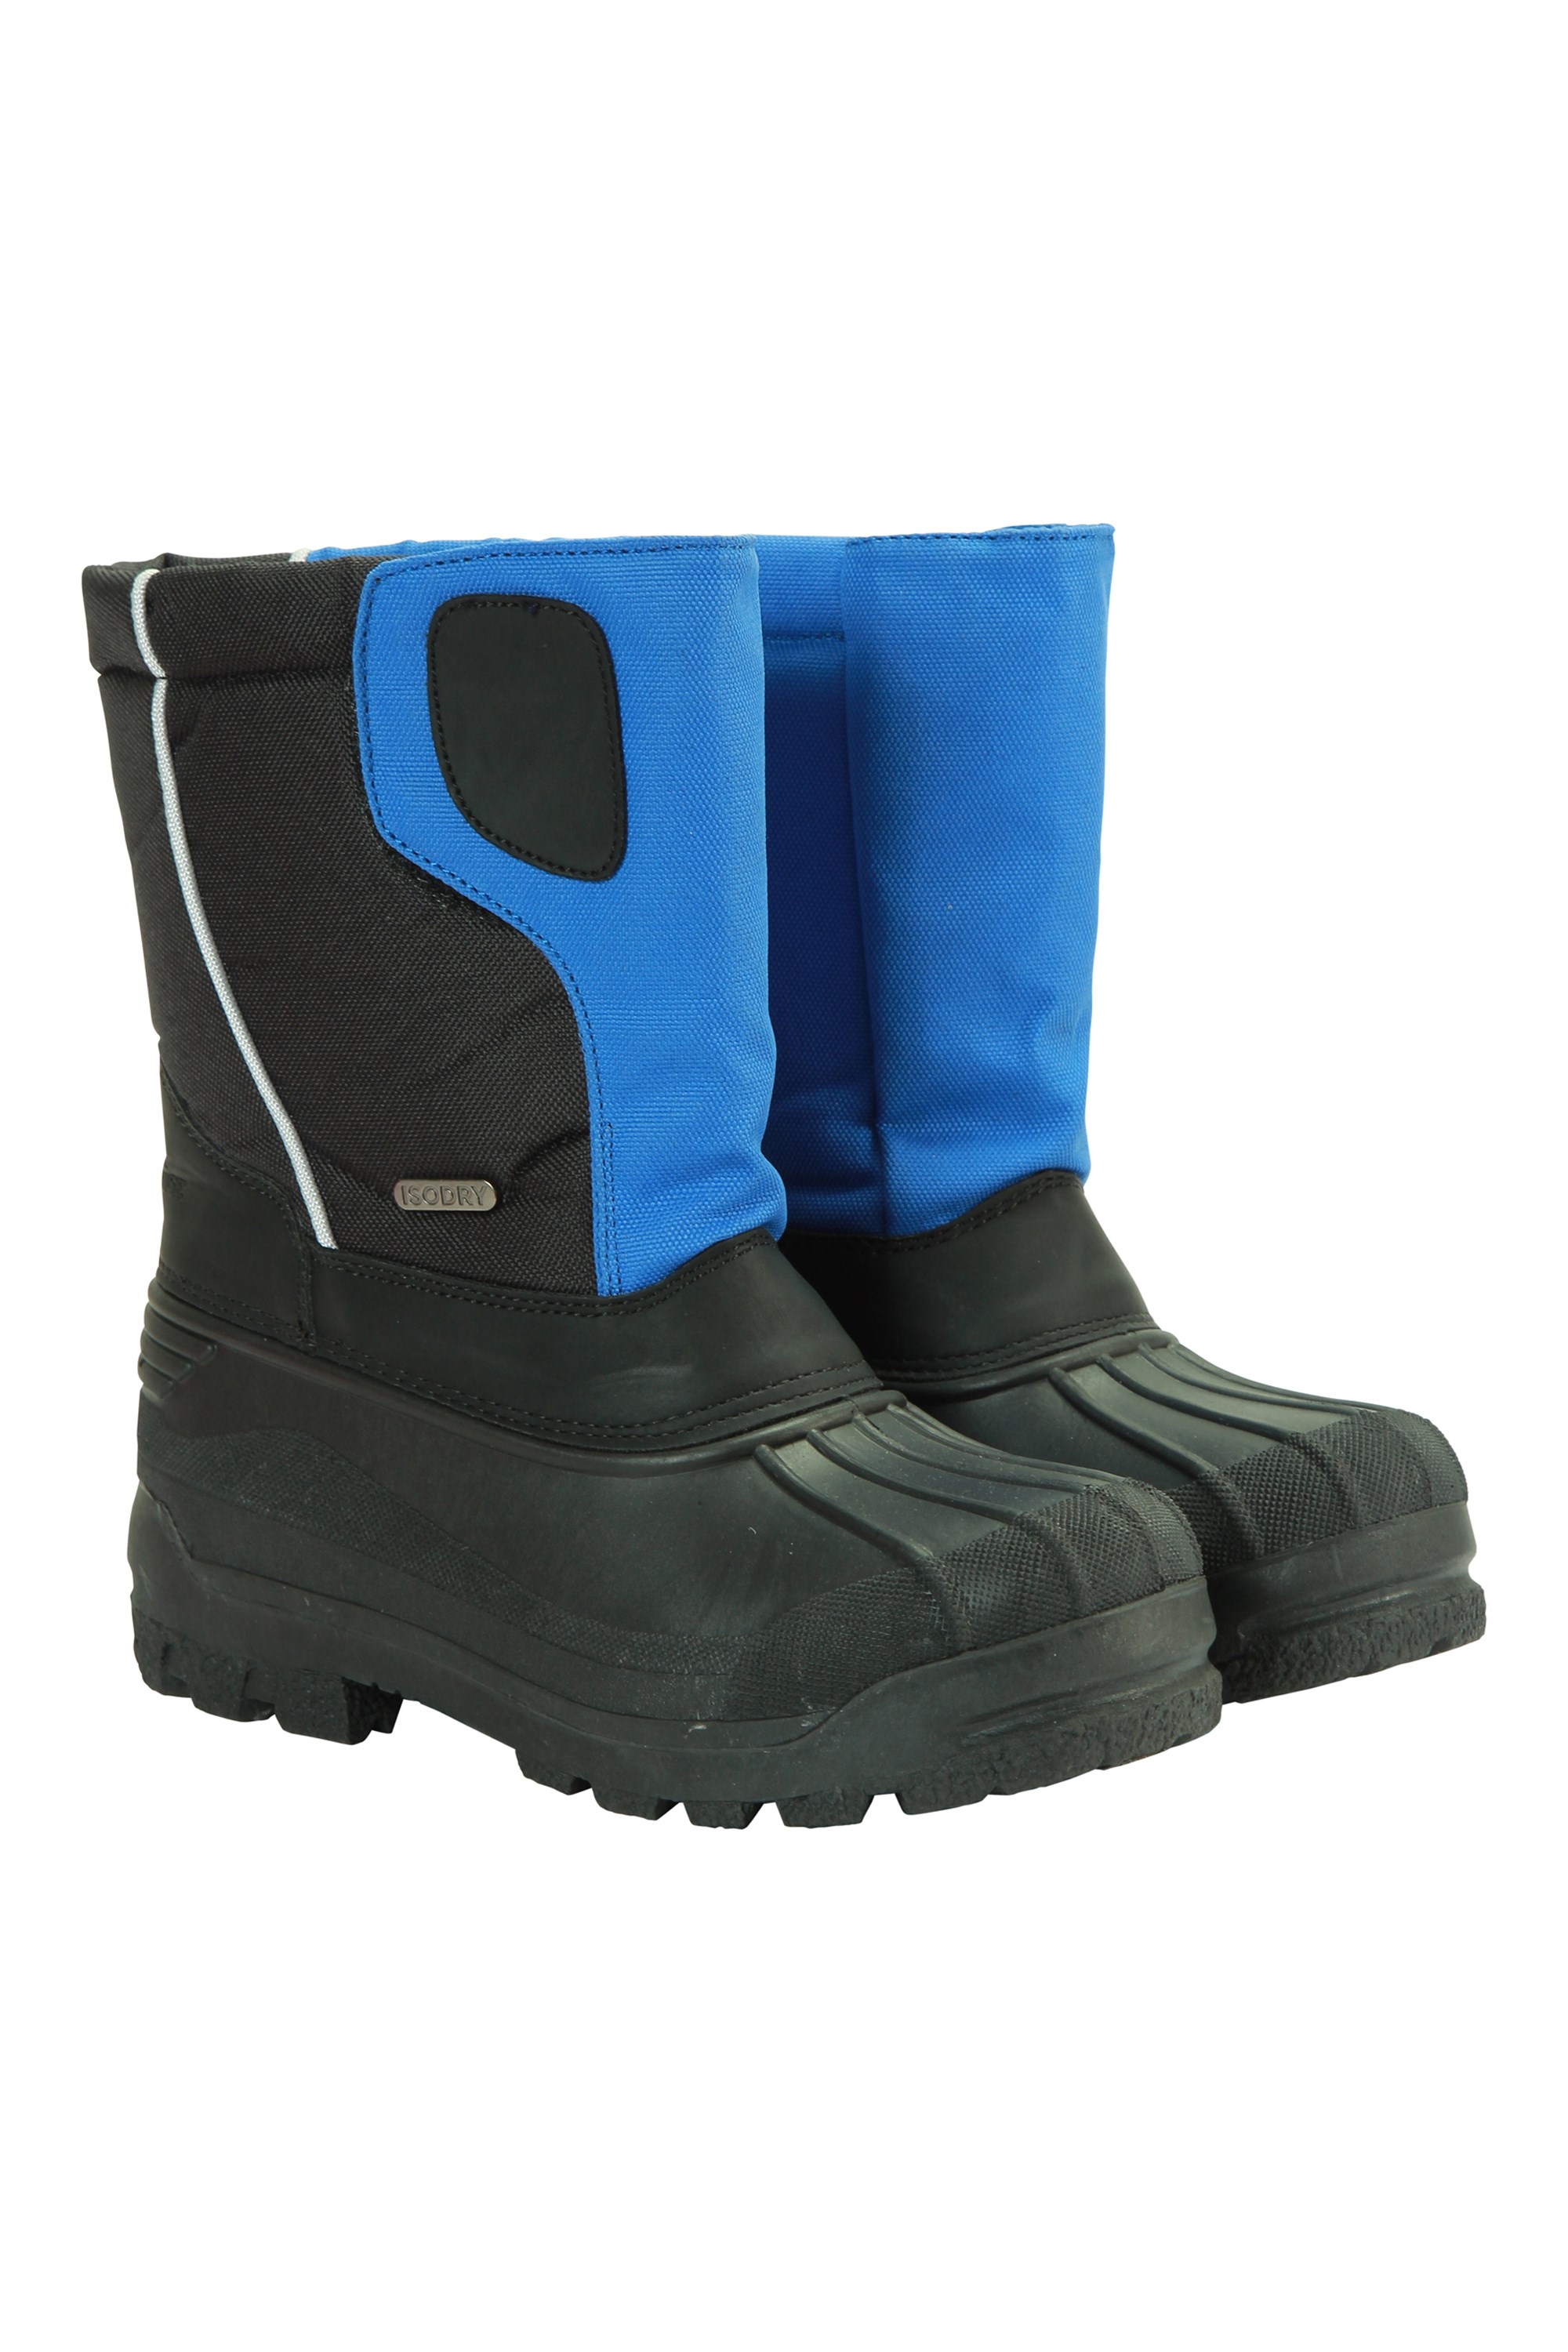 kids blue boots